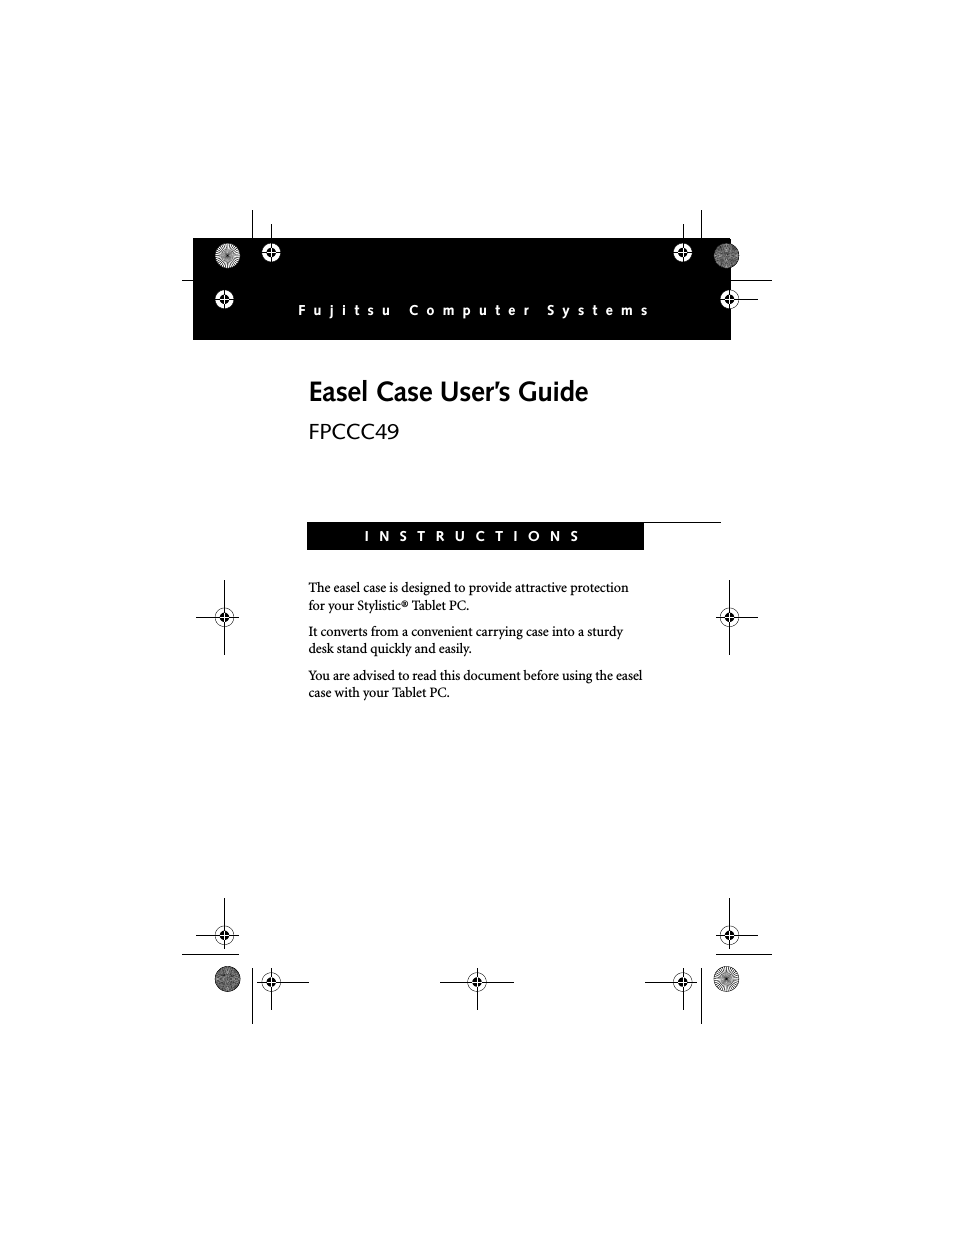 Easel Case FPCC49